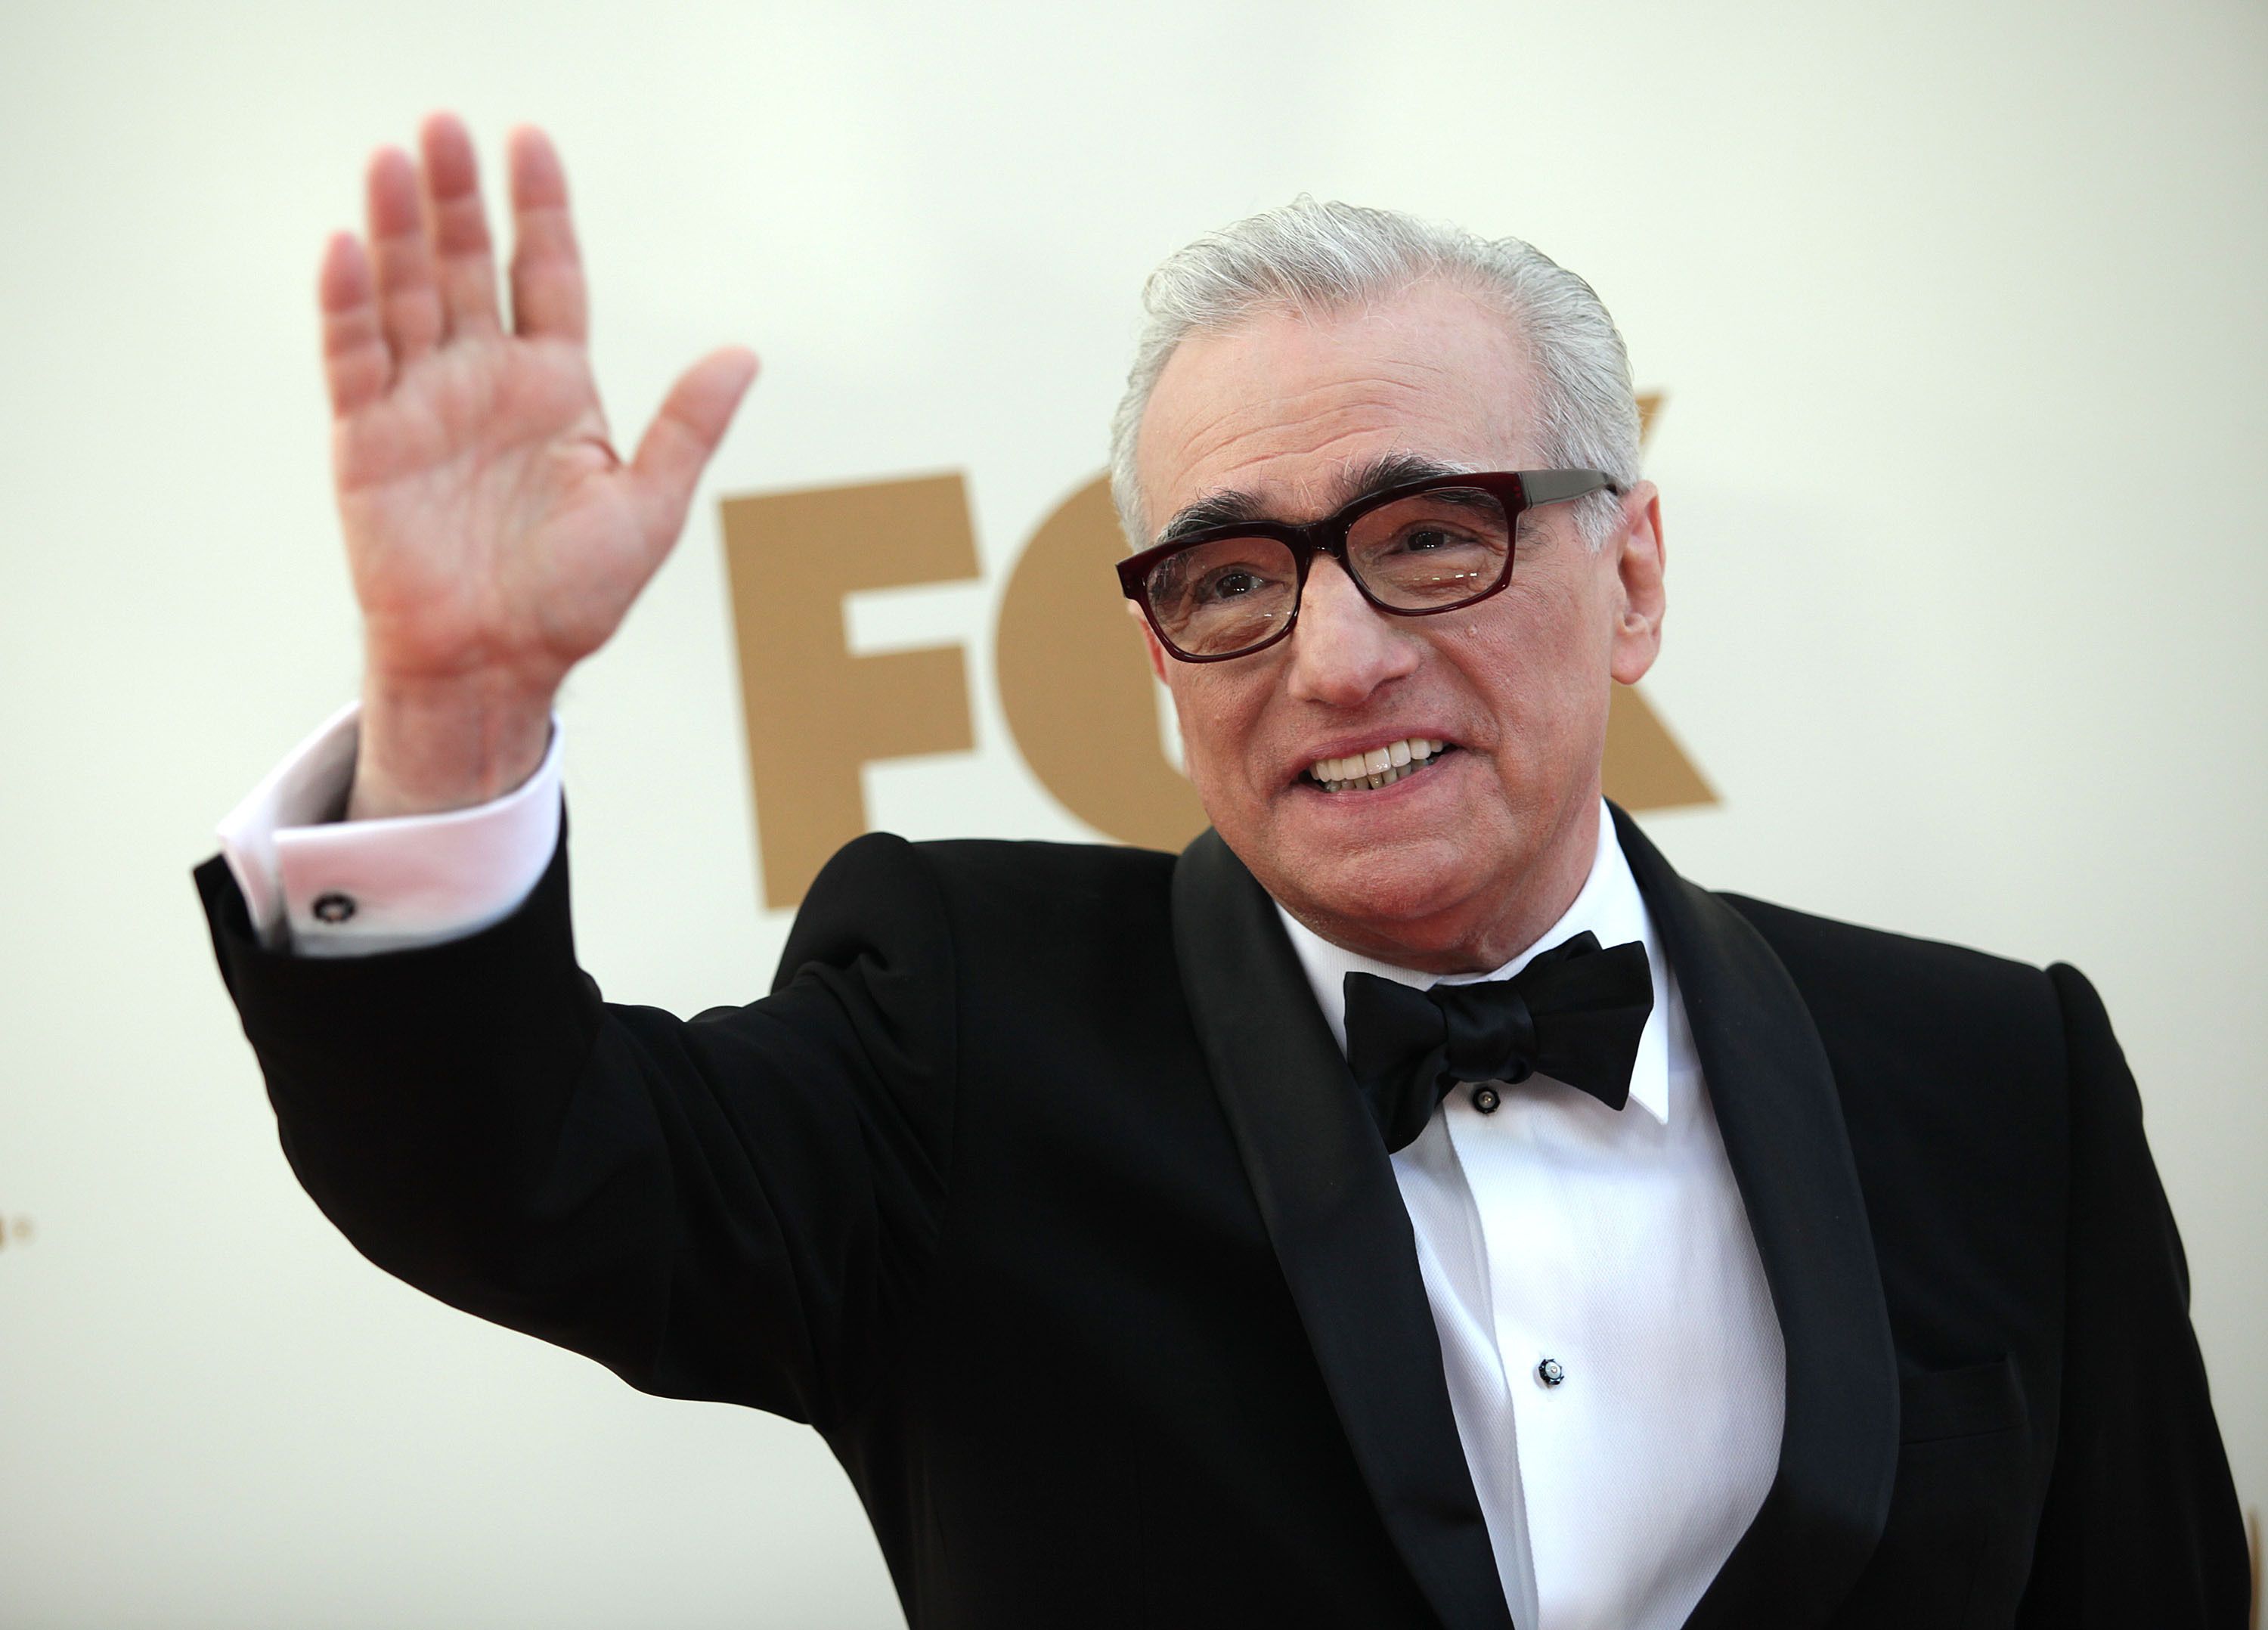 Scorsese prepara una película sobre Jesucristo tras su "inspirador" encuentro con el Papa Francisco